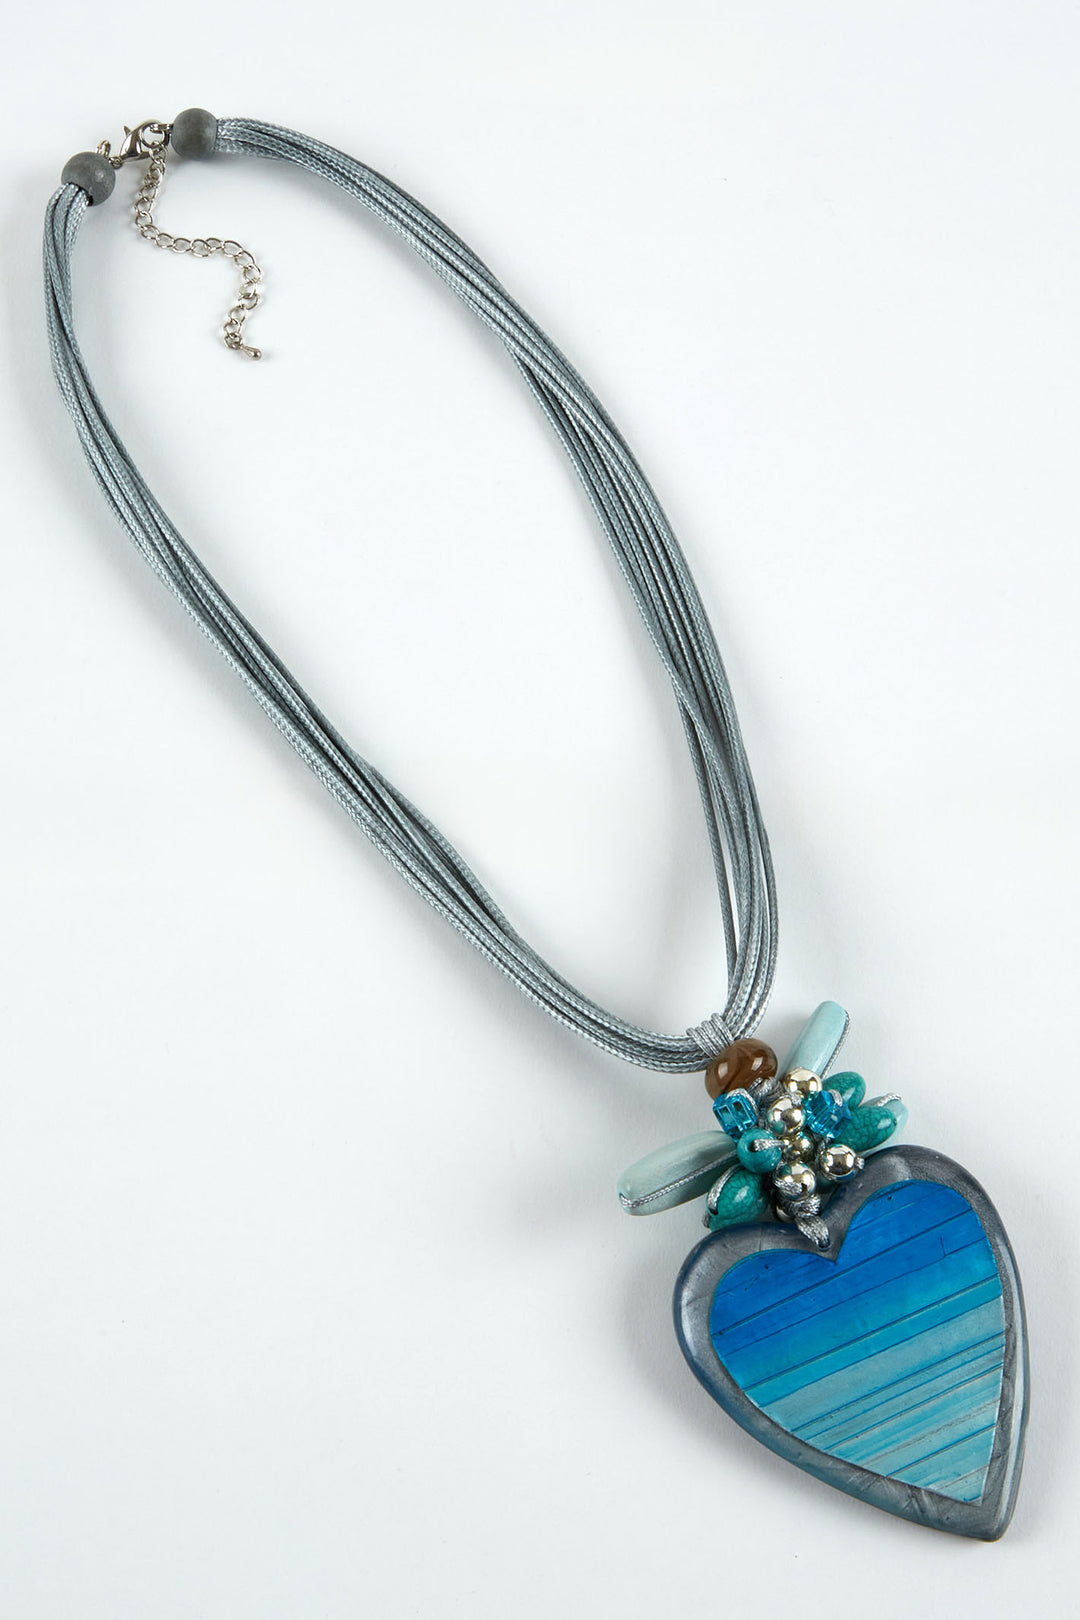 Dante NL5627 Blue Ombre Heart Necklace - Experience Boutique